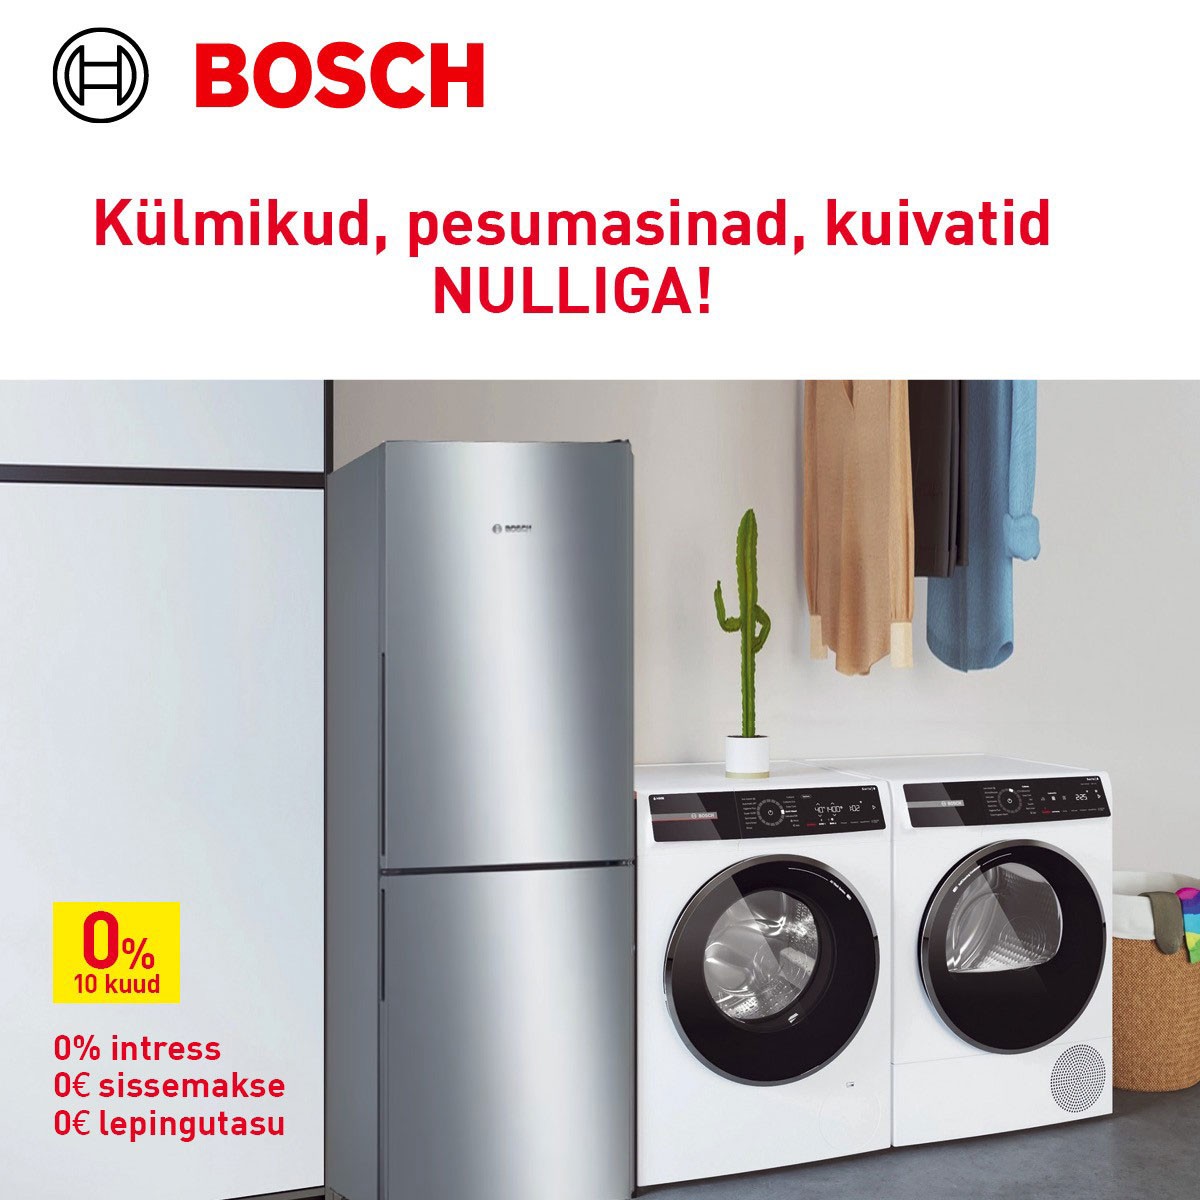 Bosch 0%